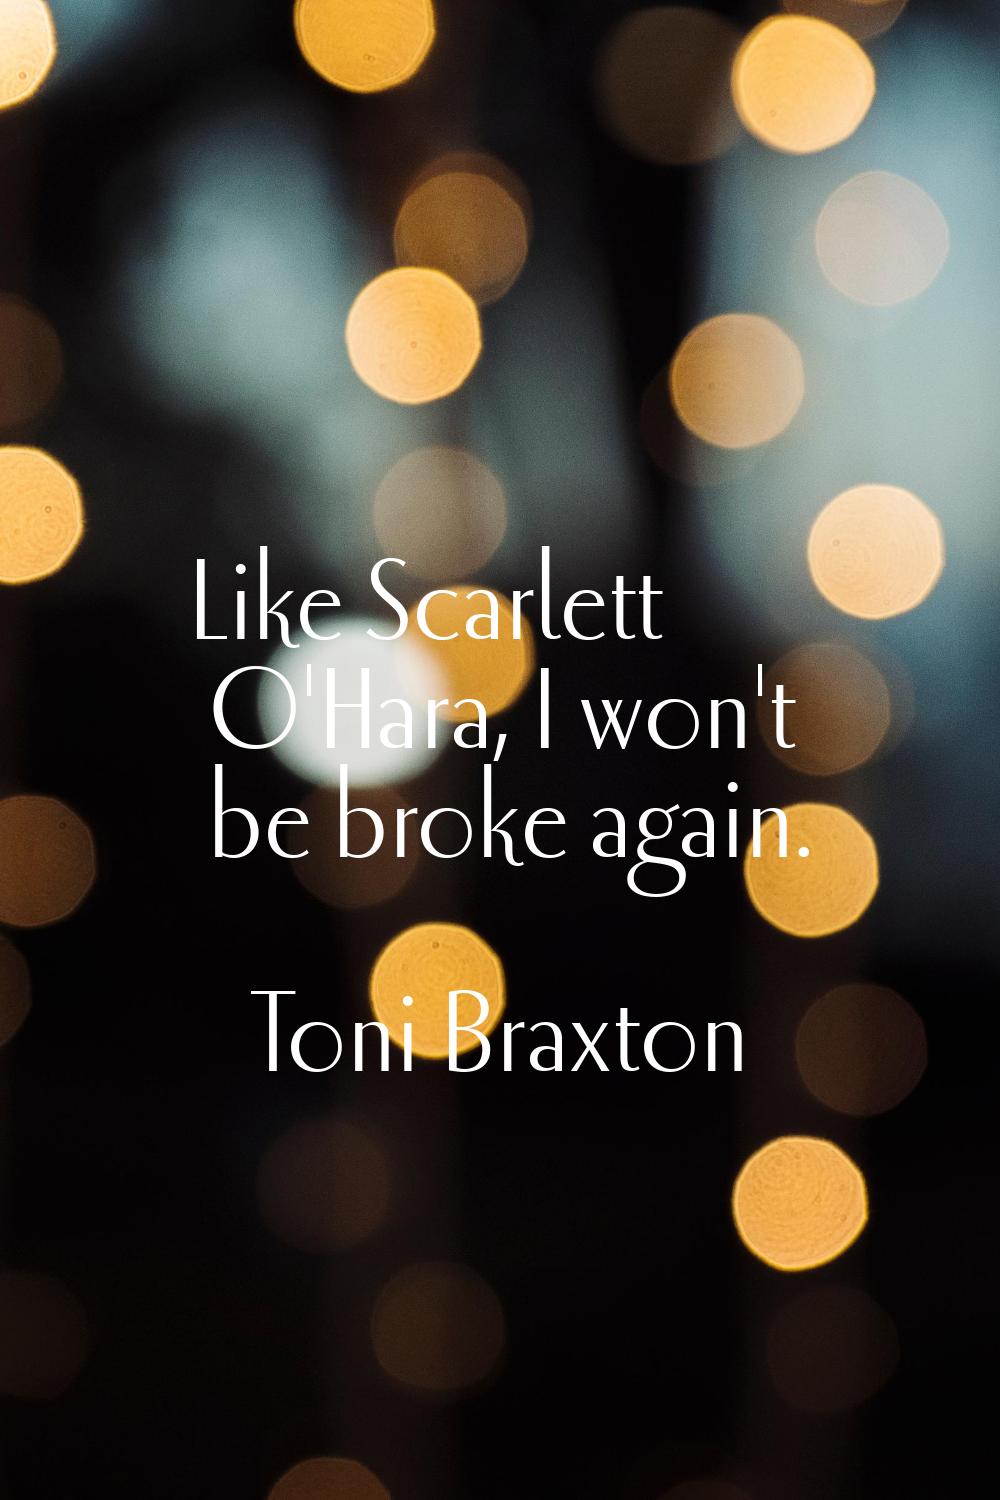 Like Scarlett O'Hara, I won't be broke again.